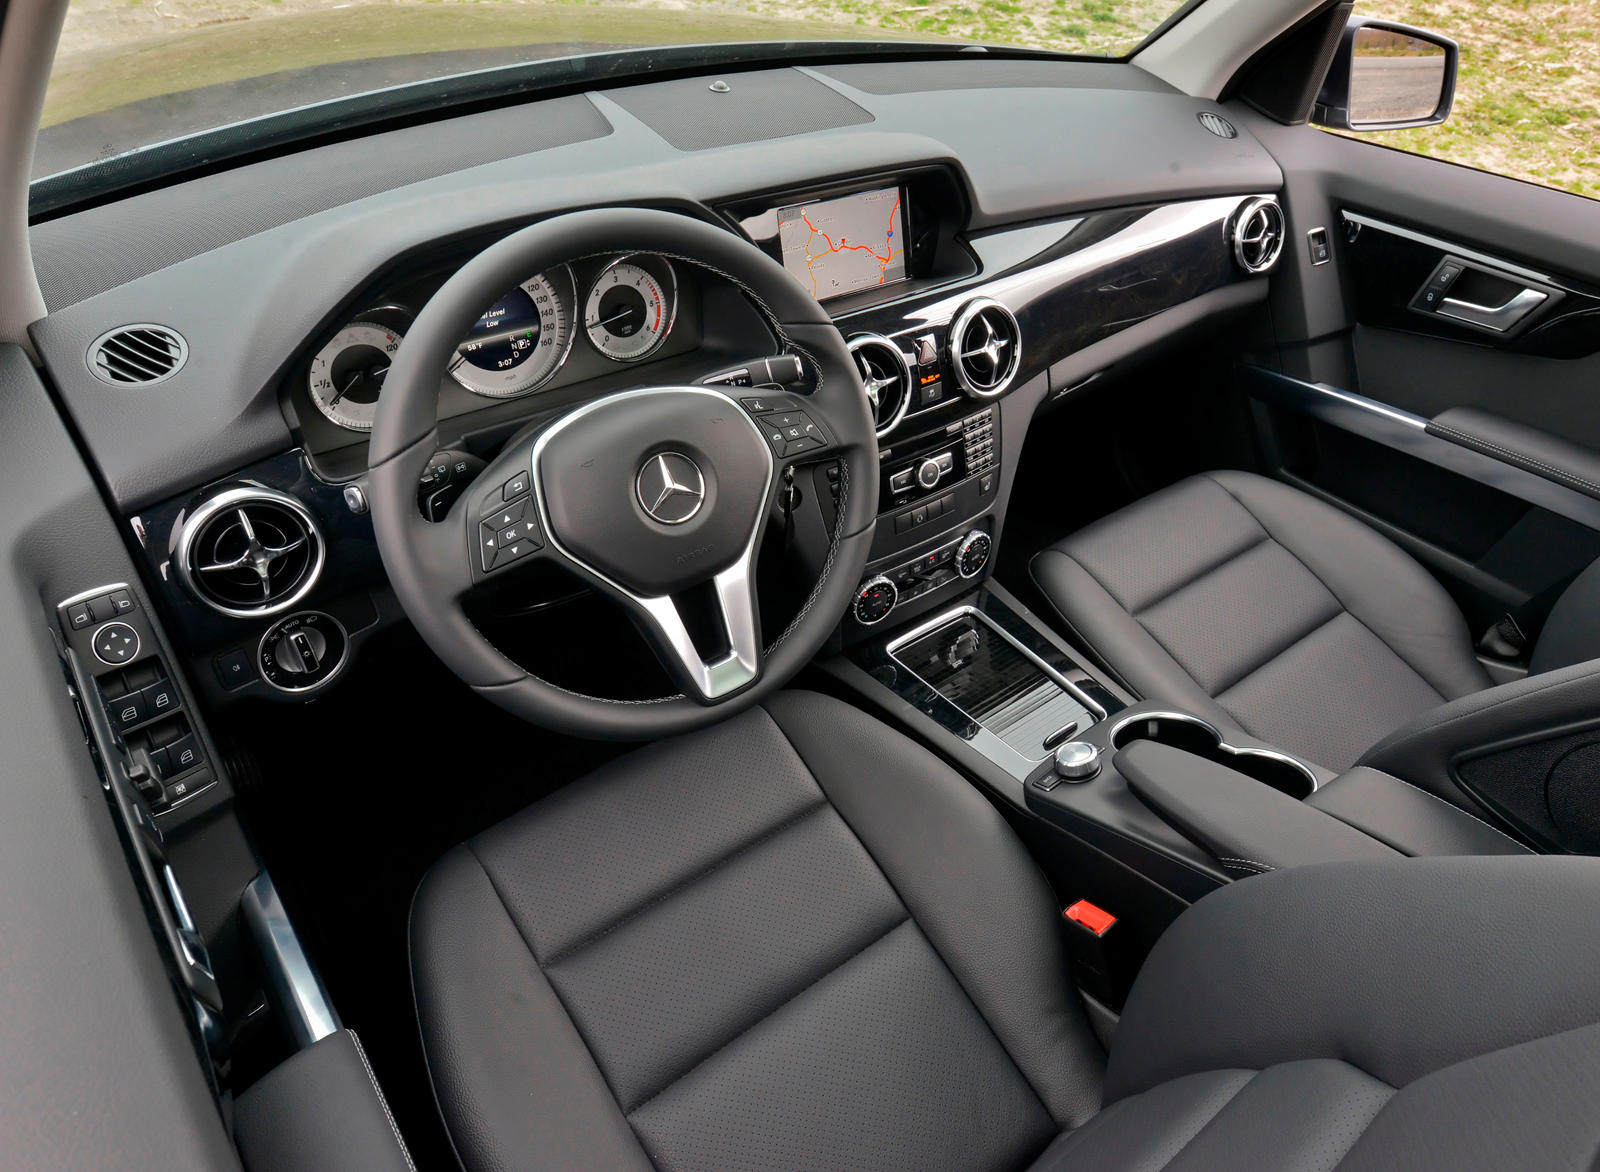 2014 Mercedes-Benz GLK-Class Interior Photos | CarBuzz